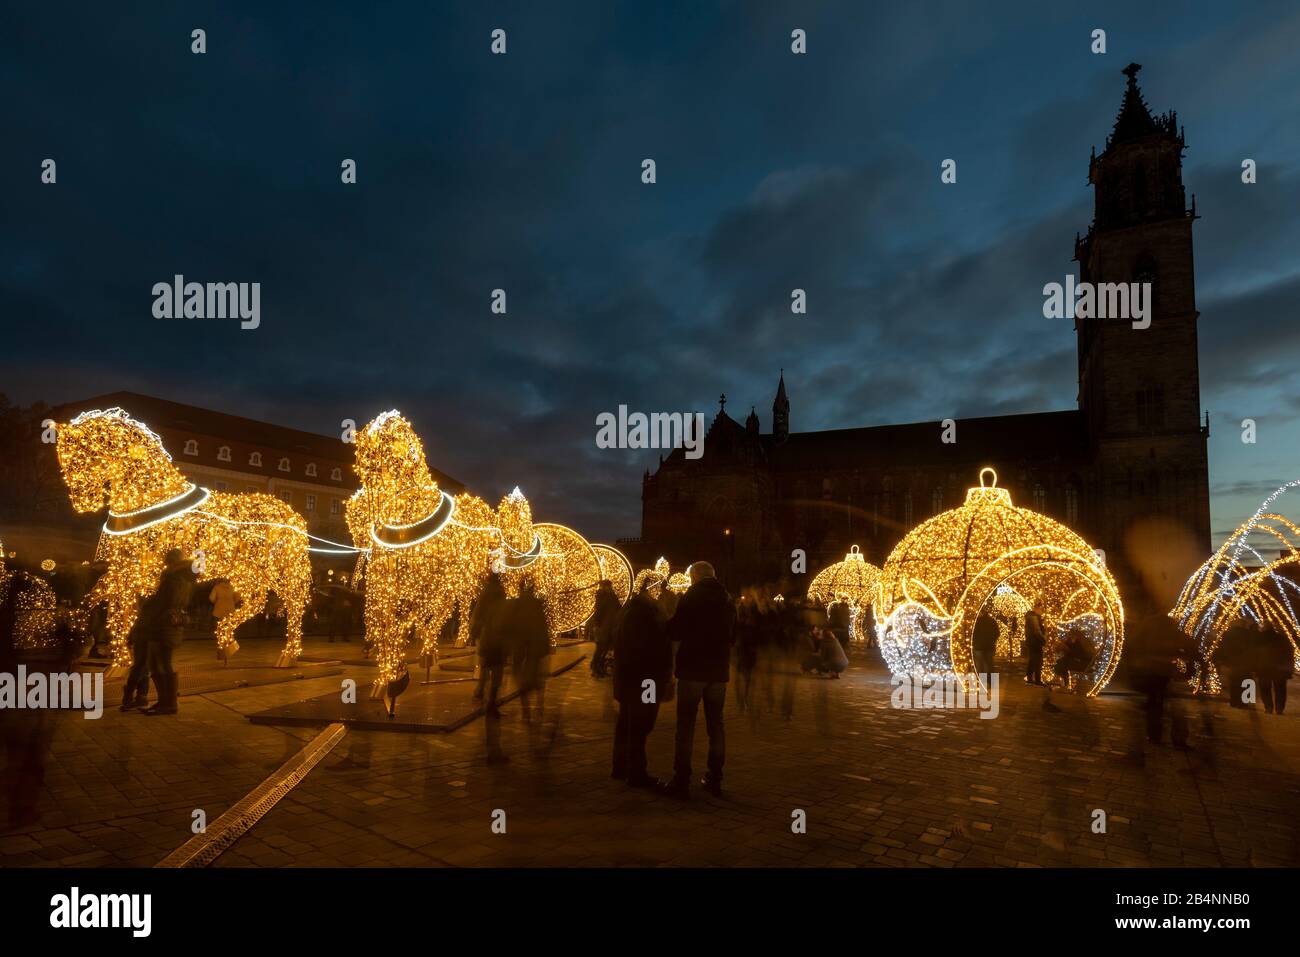 Deutschland, Sachsen-Anhalt, Magdeburg, dutzende Besucher gehen über den Domplatz zwischen weihnachtlichen Motiven hindurch, die Lichtskulpturen sind Stock Photo